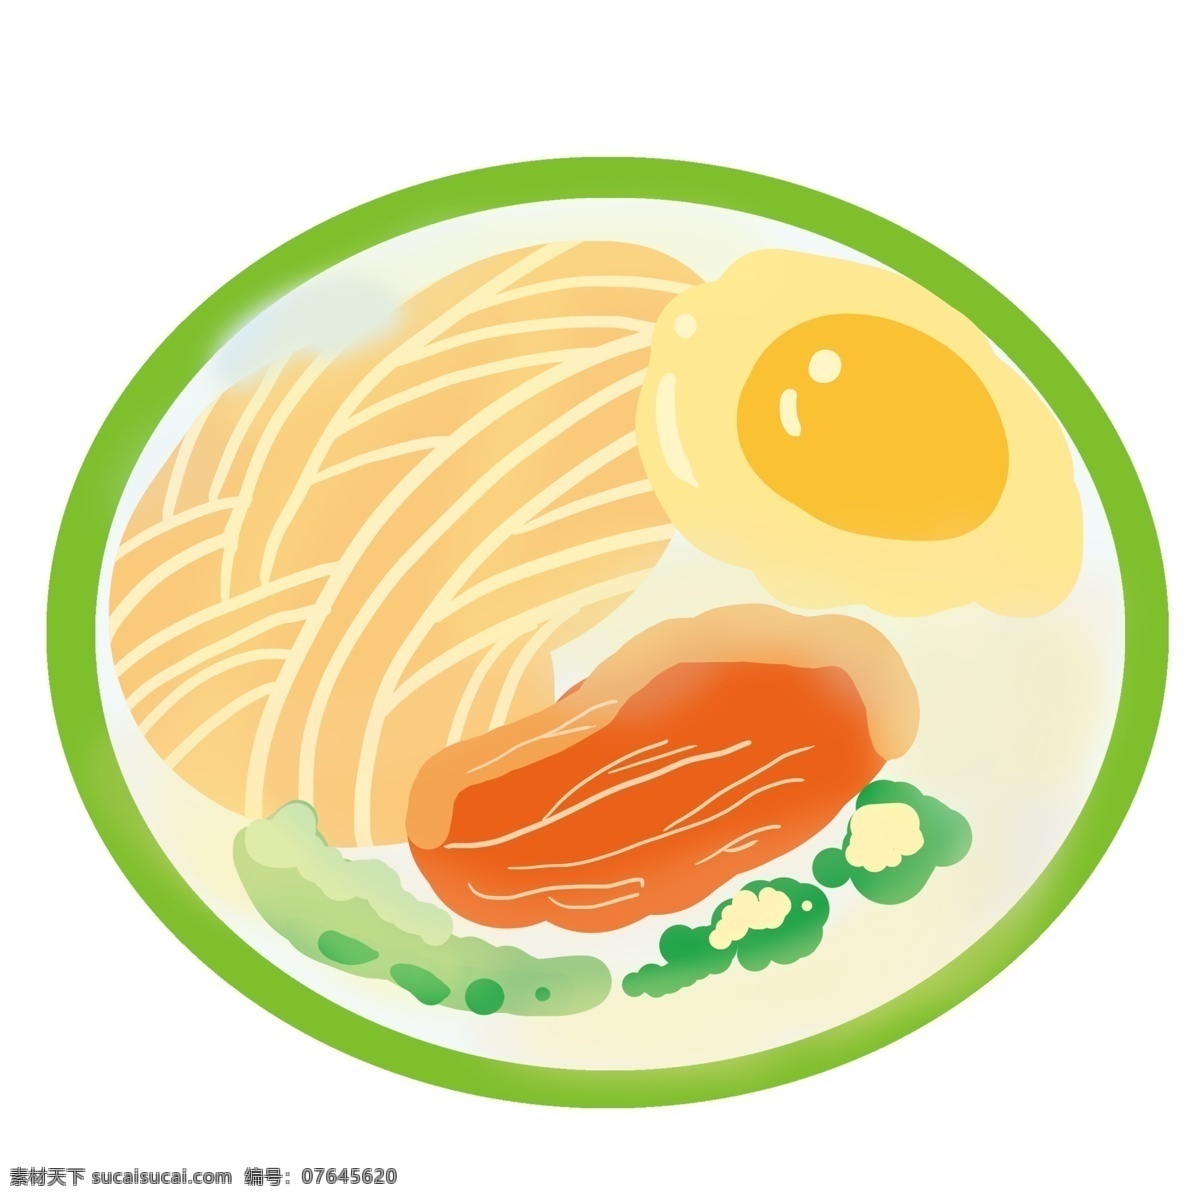 卡通 美味 面条 插画 绿色的盘子 拉面 食物 面条插画 精美的面条 煎蛋 绿色的蔬菜 卡通食物插画